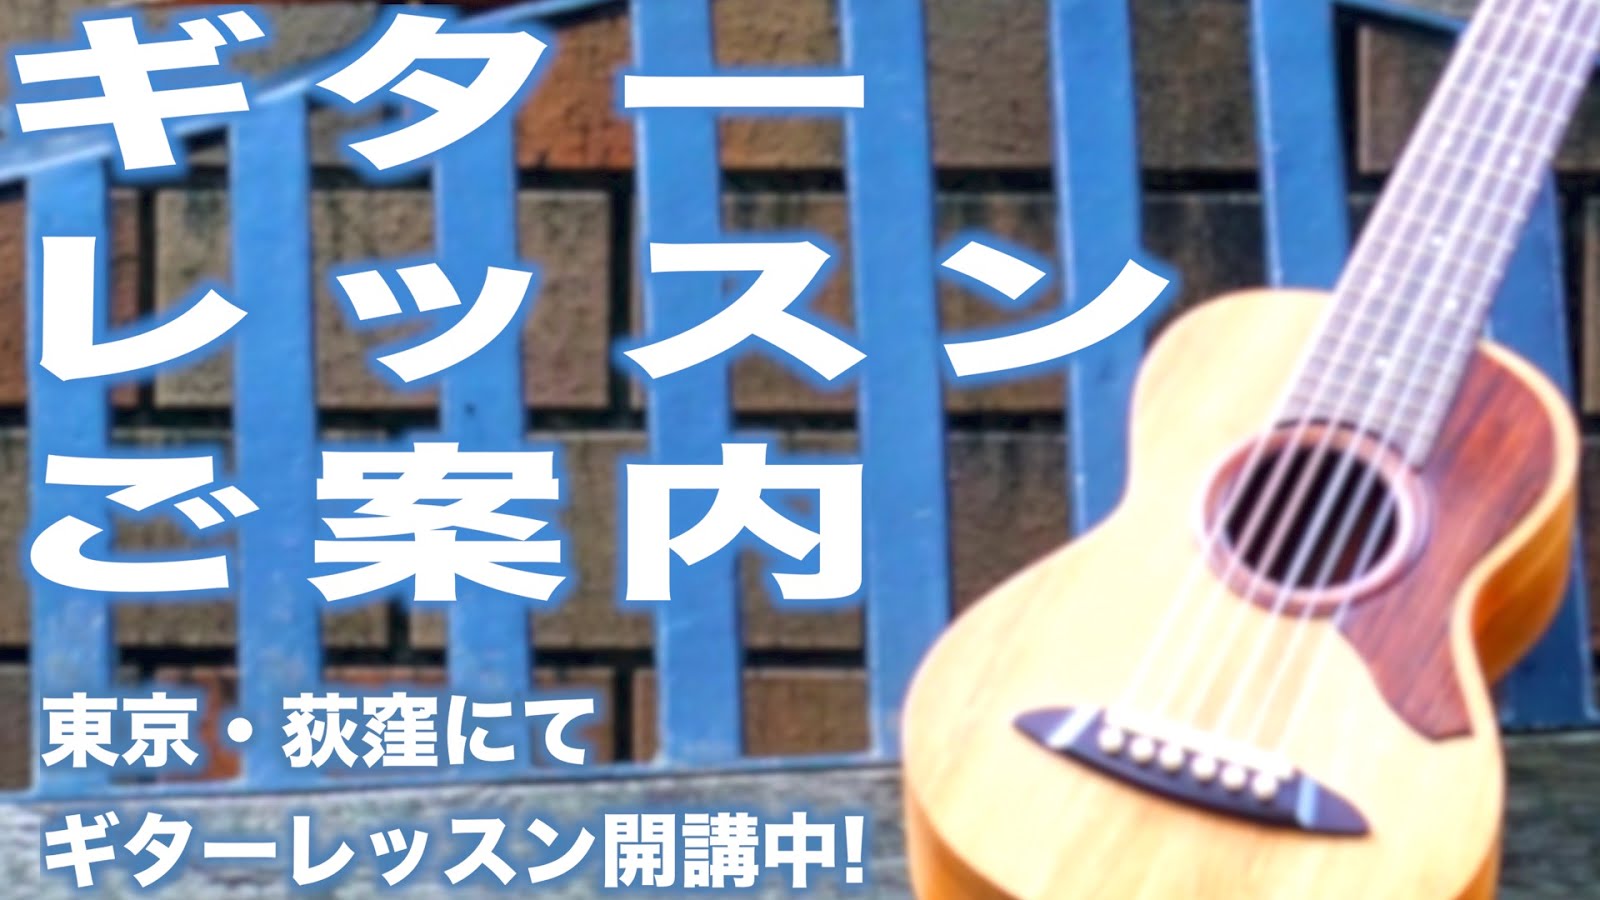 【GUITAR LESSON】